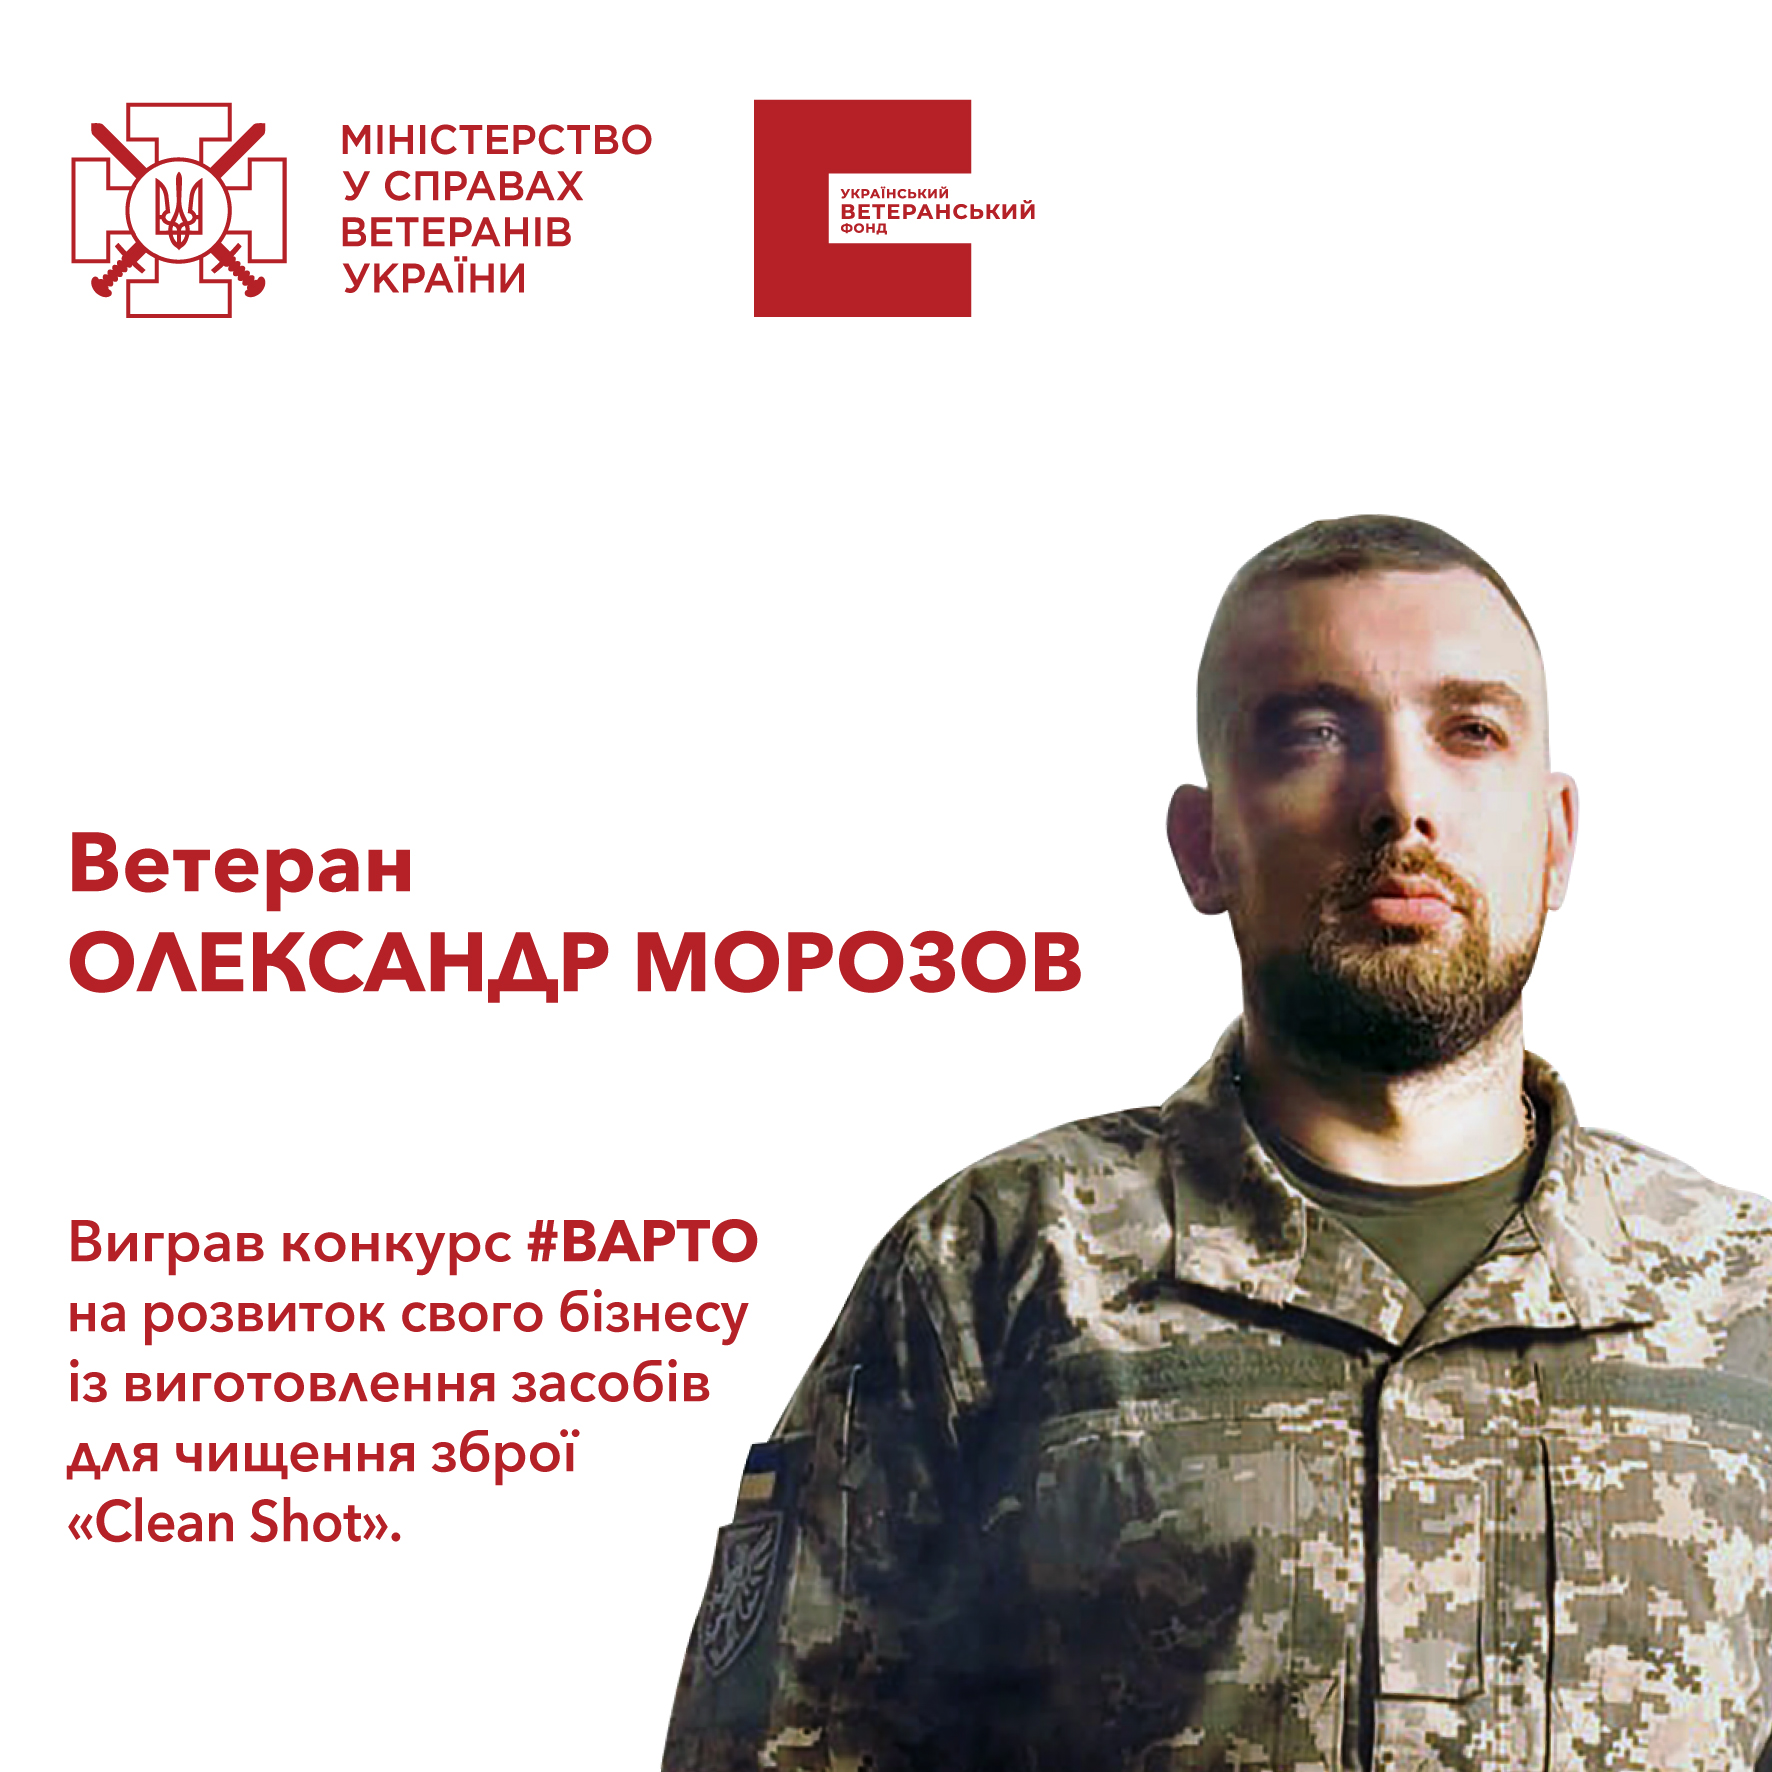 У свої 25 років ветеран Олександр Морозов запатентував масляні серветки для чищення зброї